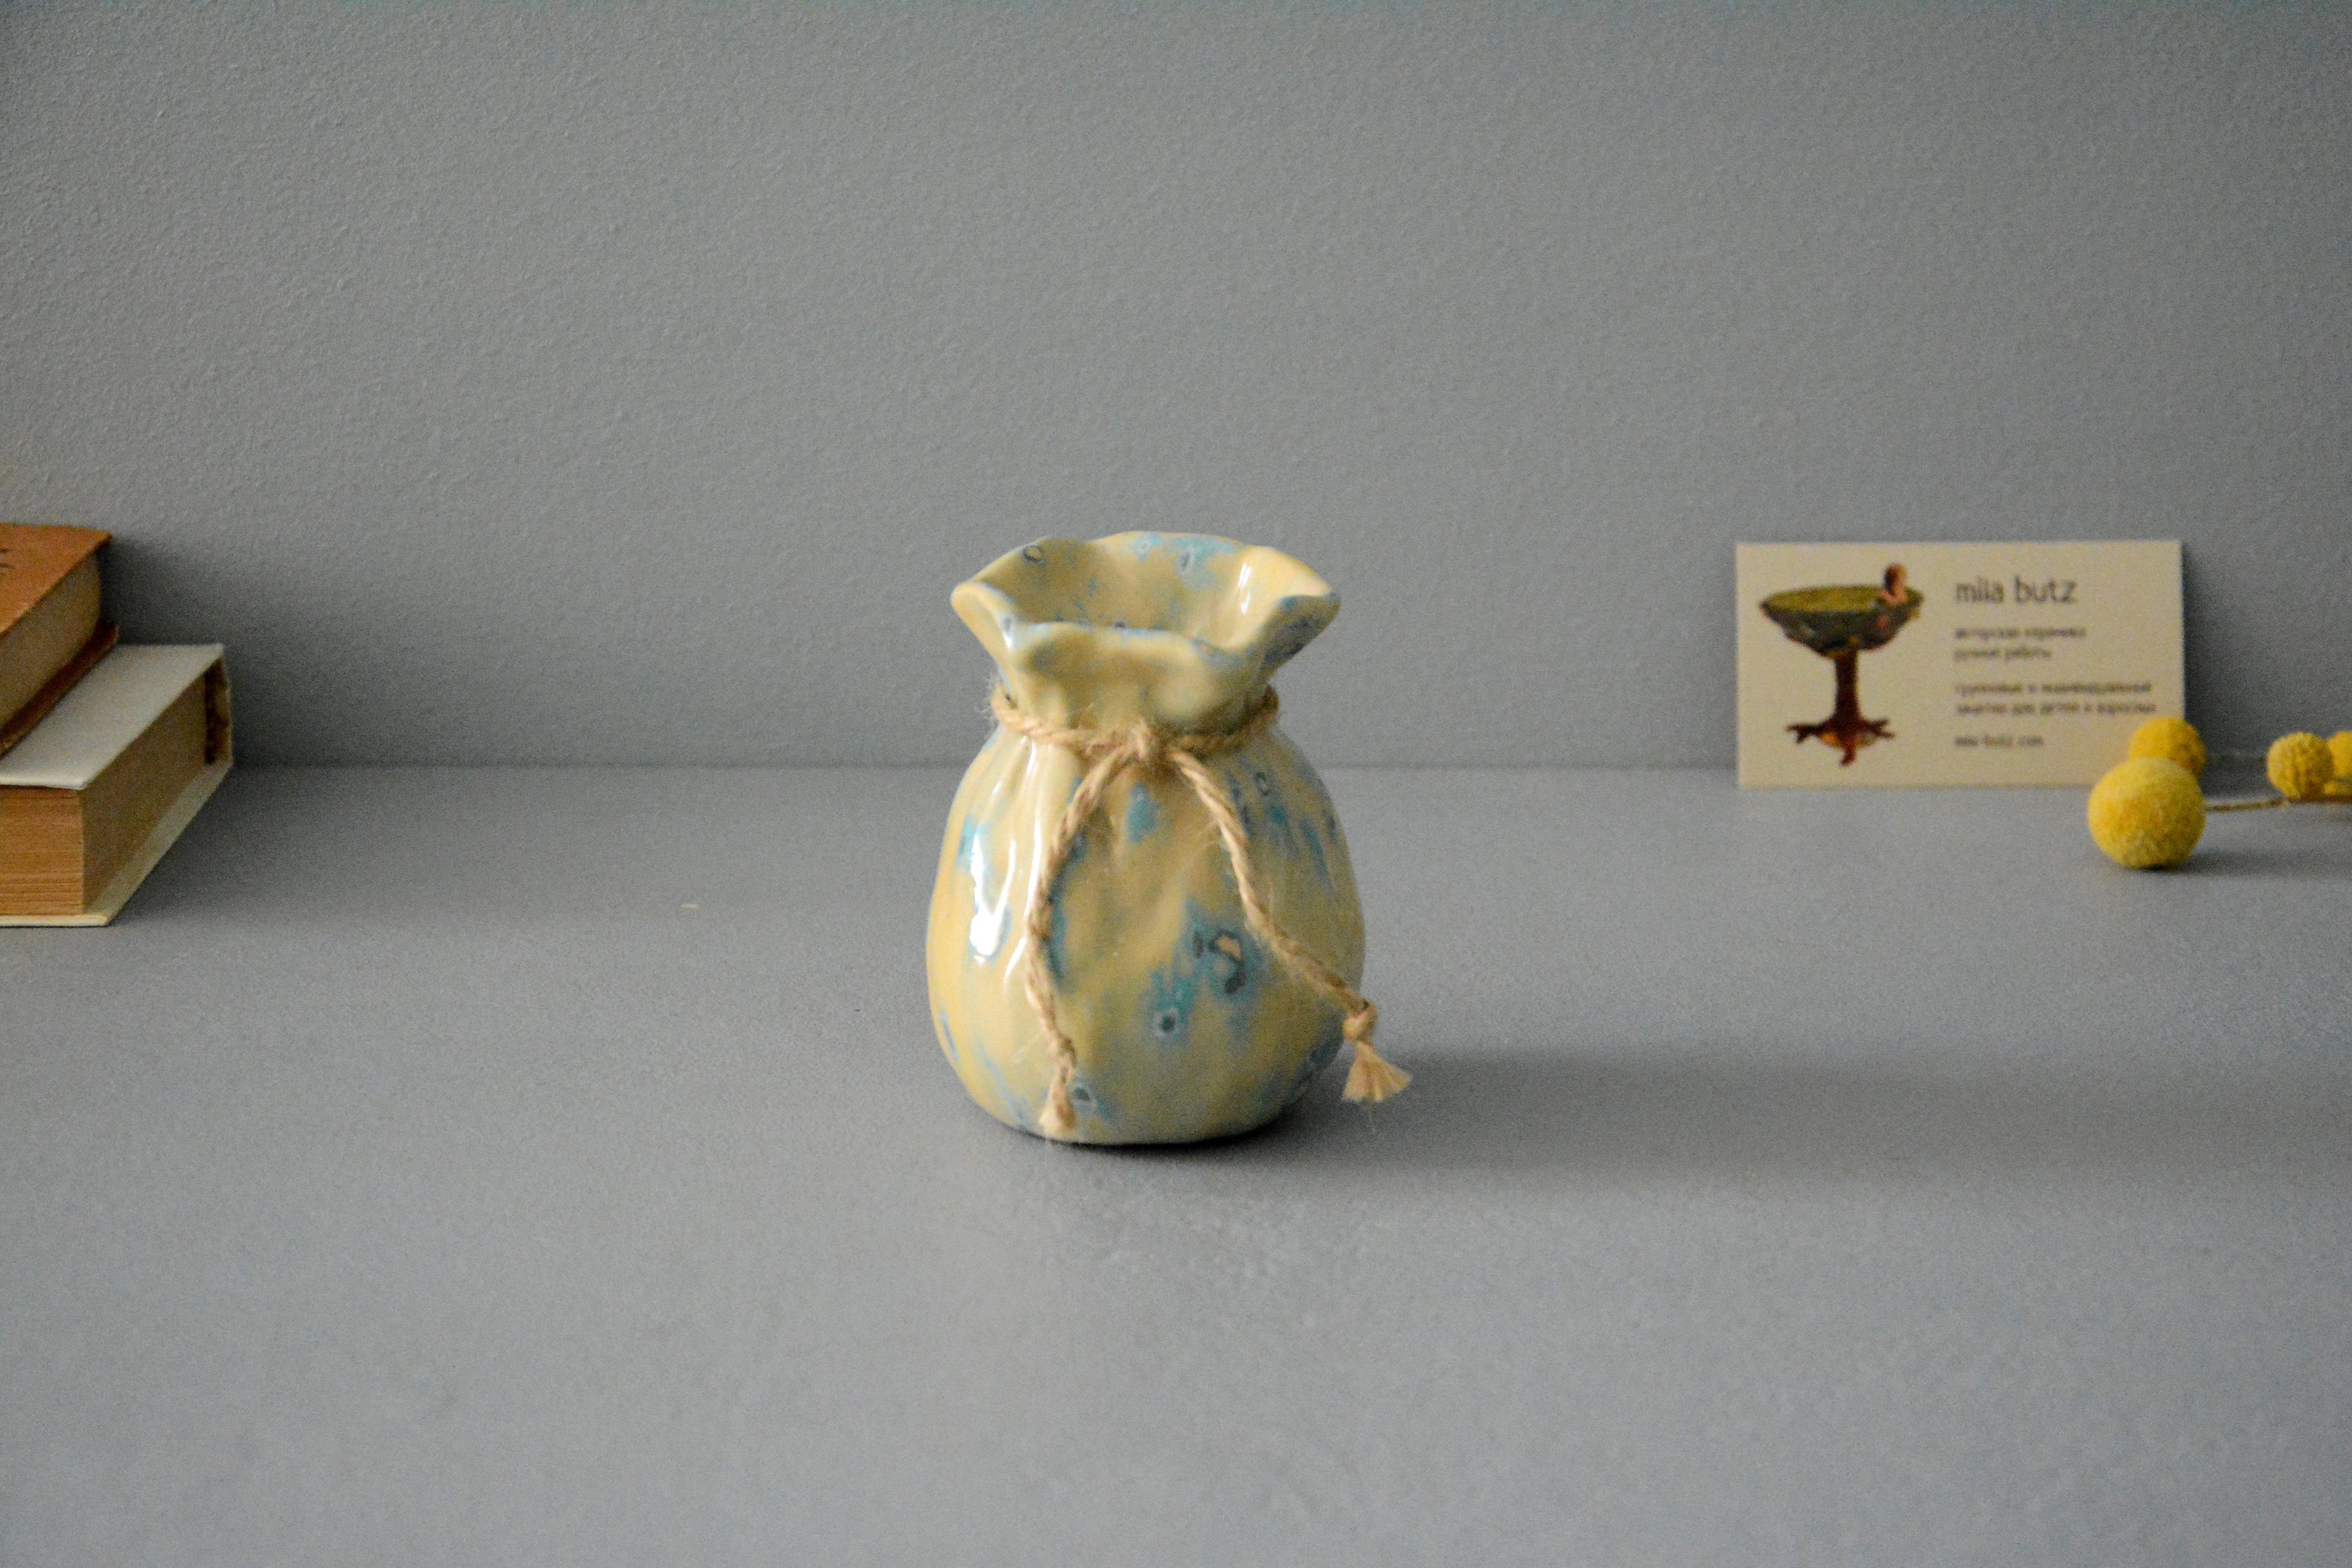 Интерьерная ваза «Бежевый Мешочек», высота - 9 см, цвет - бежевый. Фото 1407.